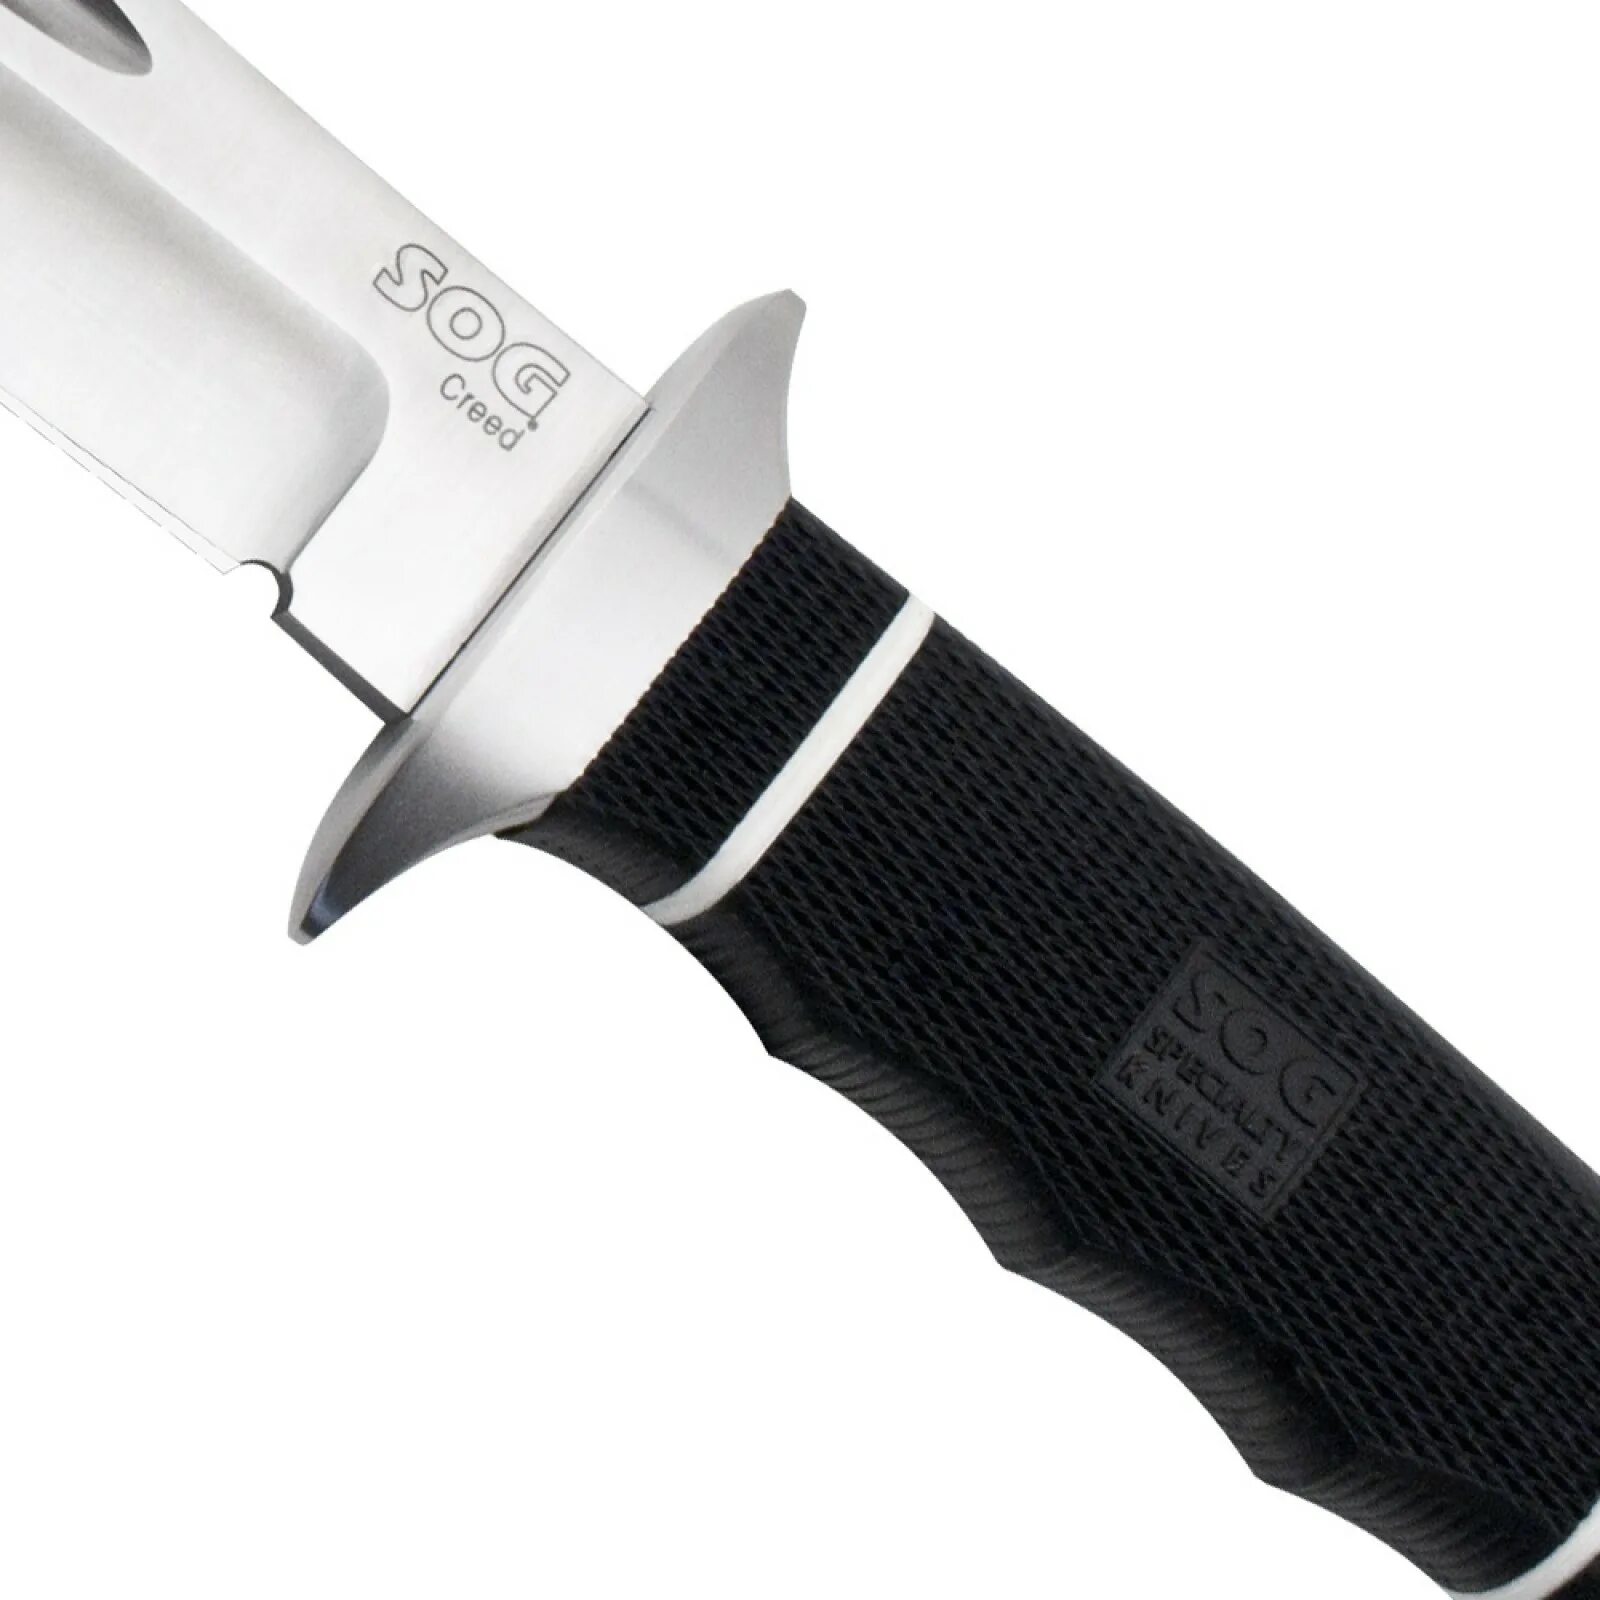 Купить фиксированный нож. SOG Creed нож. Нож SOG cd01 Creed. SOG Specialty ножи. SOG Specialty Knives спецназовский нож.